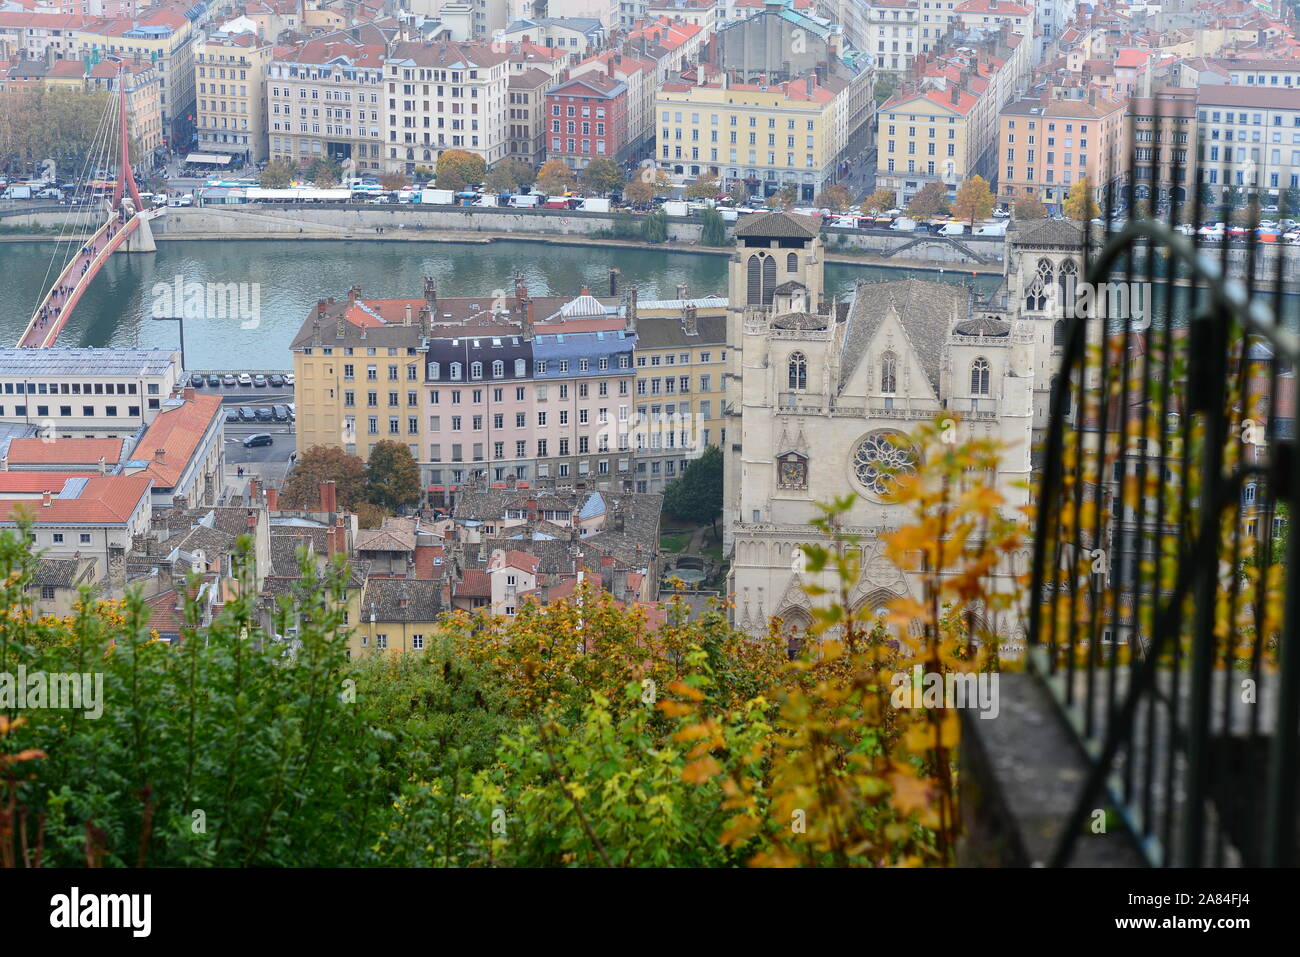 Vista panoramica sul centro di Lione, la terza città più grande della Francia, e sul fiume che la attraversa Foto Stock